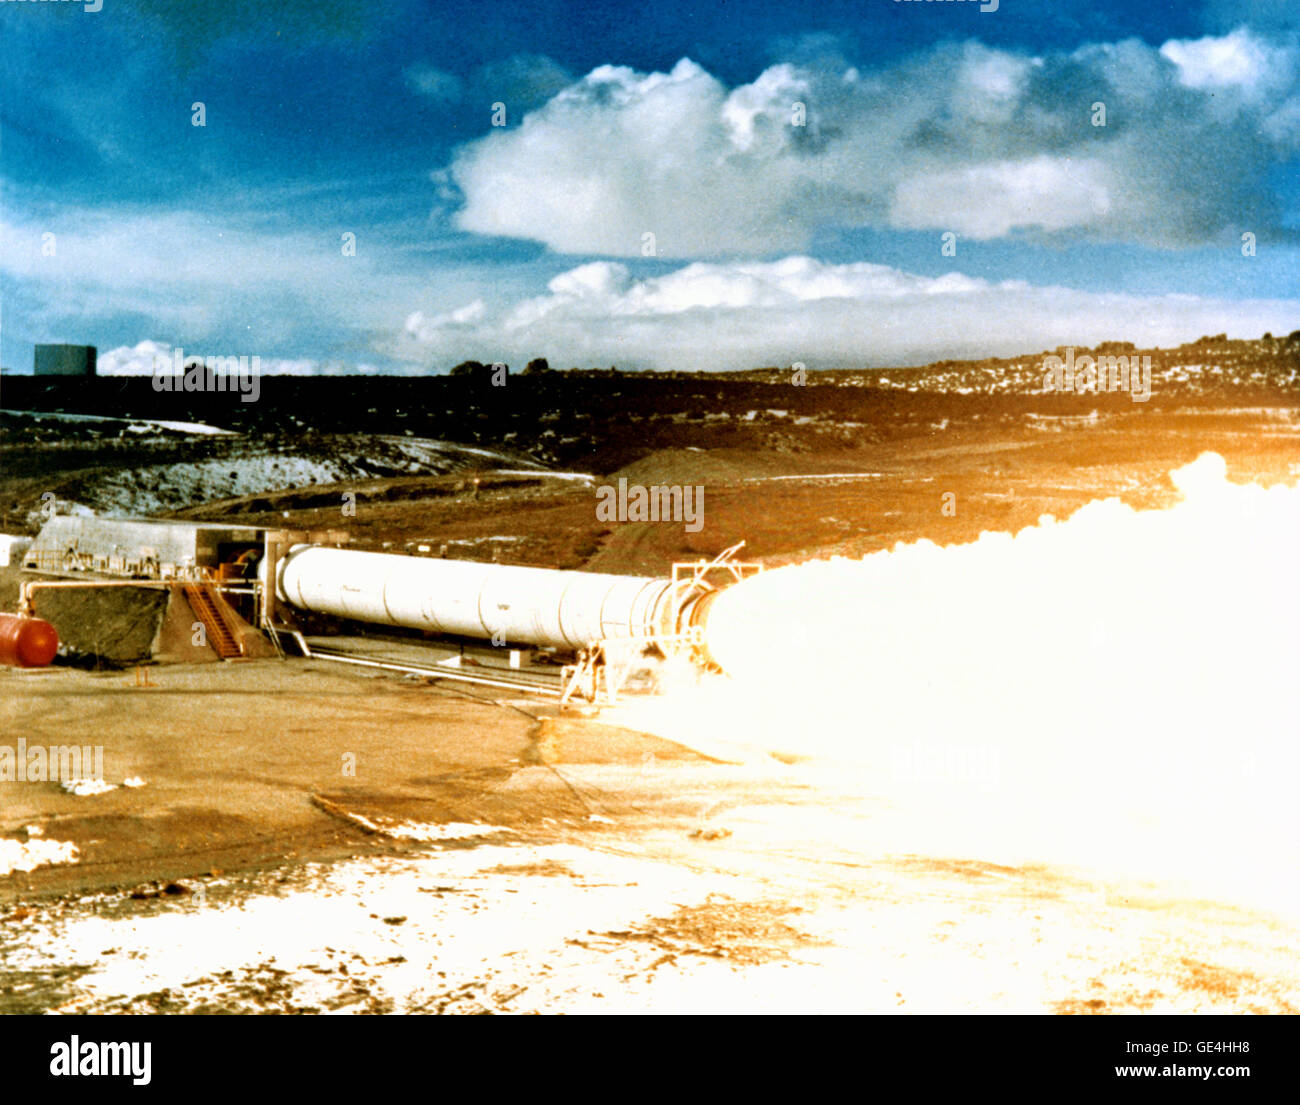 Questa fotografia è stata scattata durante la prova statica la cottura del DM-2 (Motore di dimostrazione) per il solido Booster a razzo (SRB) al terreno di prova di Tiocolo Corporation vicino a Brigham City, Utah. Come uno dei principali componenti della navetta spaziale, SRBs forniscono la maggior parte della potenza, la loro spinta combinata di circa 5.8 milioni di sterline, per i primi due minuti di volo. Il SRBs ha preso la navetta spaziale ad un altitudine di 28 miglia e una velocità di 3094 miglia per ora prima che essi separati e caddi indietro nell'oceano per essere recuperati, ristrutturato, e preparato per un altro volo. Marshall Space Flight Ce Foto Stock